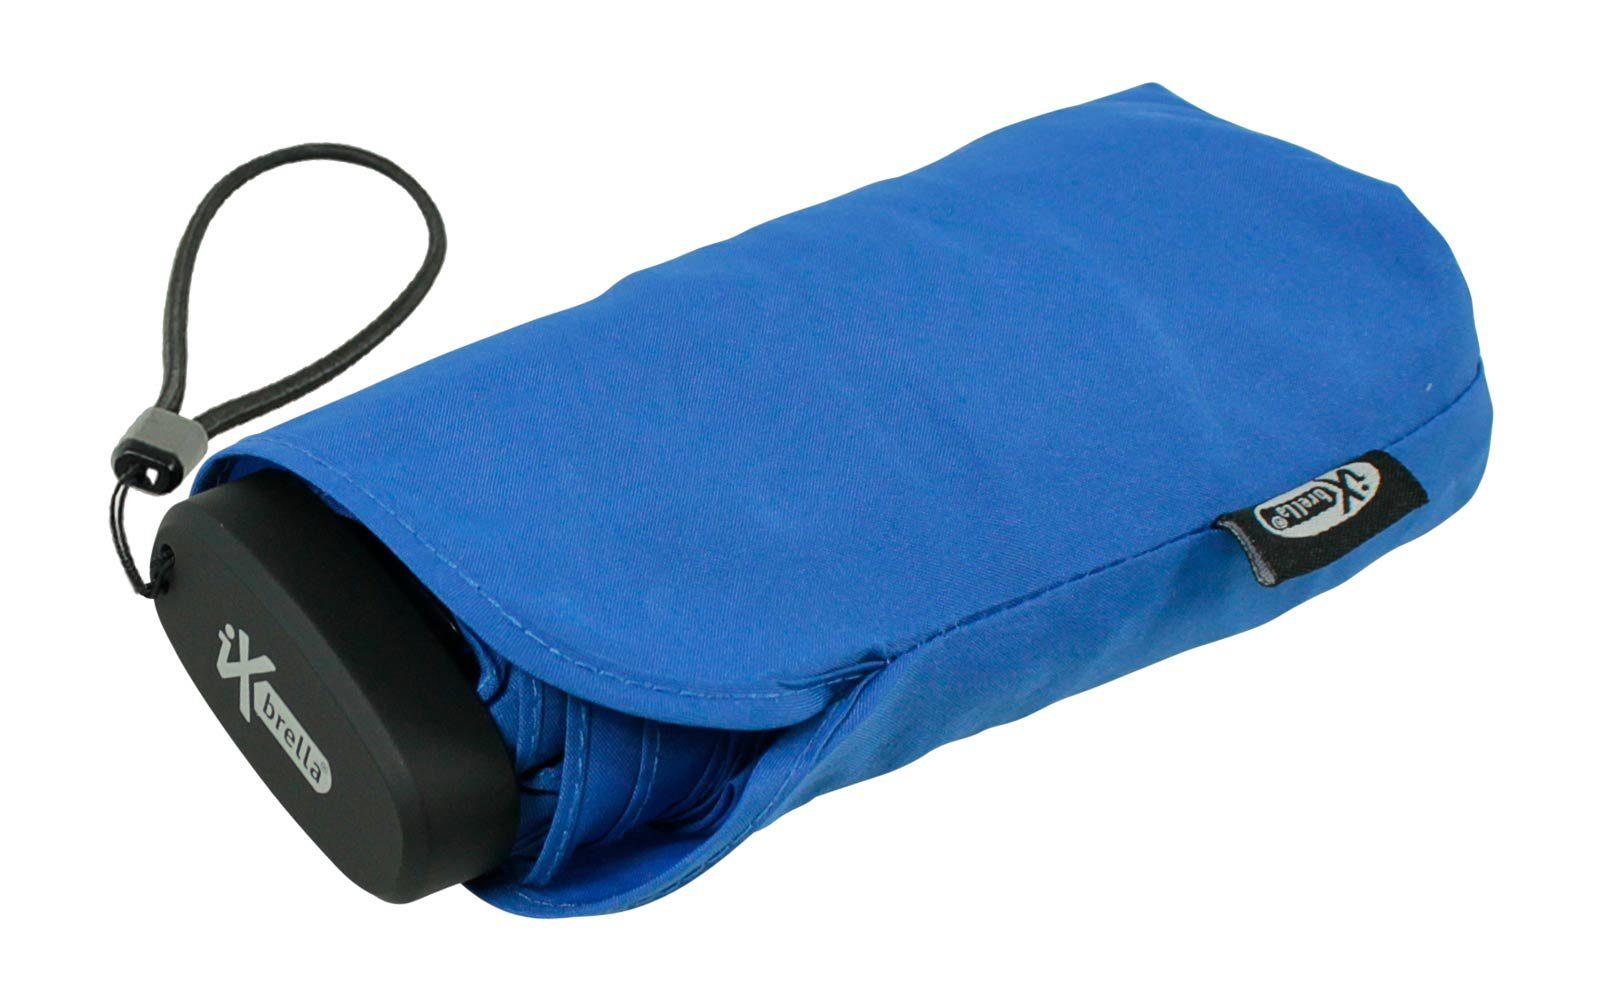 Taschenregenschirm Format, Mini Ultra cm ultra-klein im blau Schirm 15 Handy winziger iX-brella